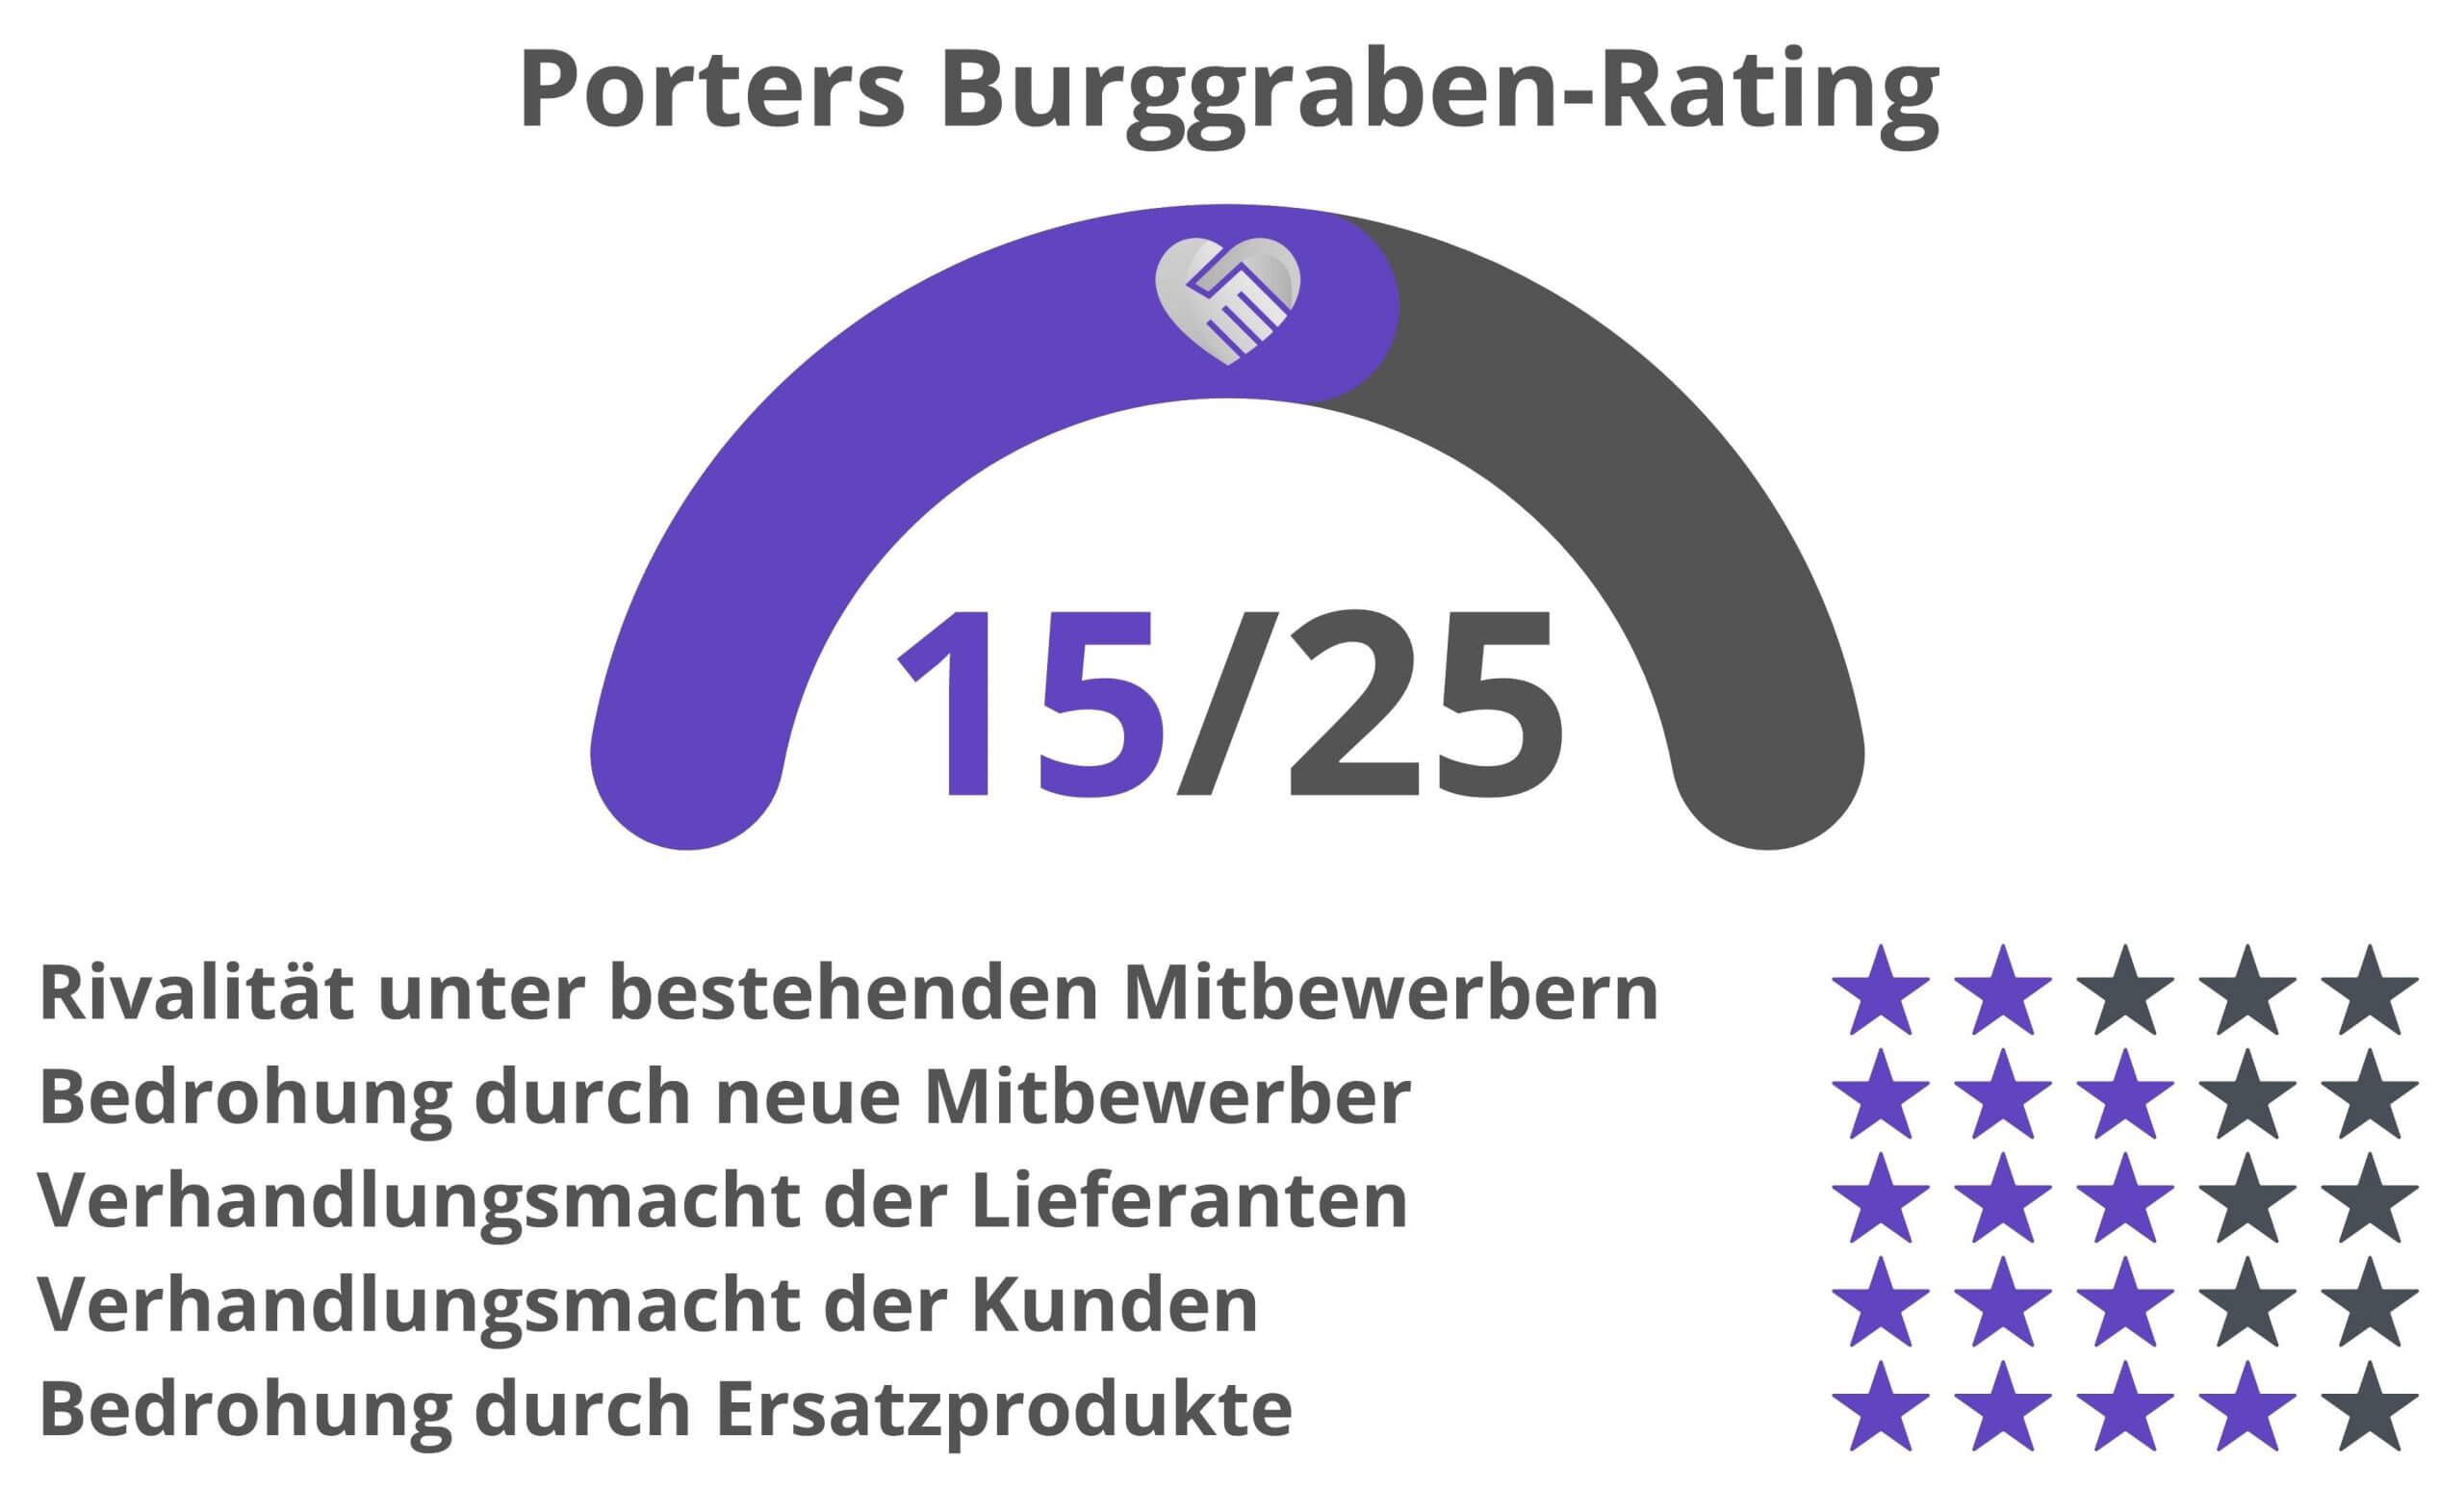 Ping An Aktie Analyse Porter Burggraben Rating